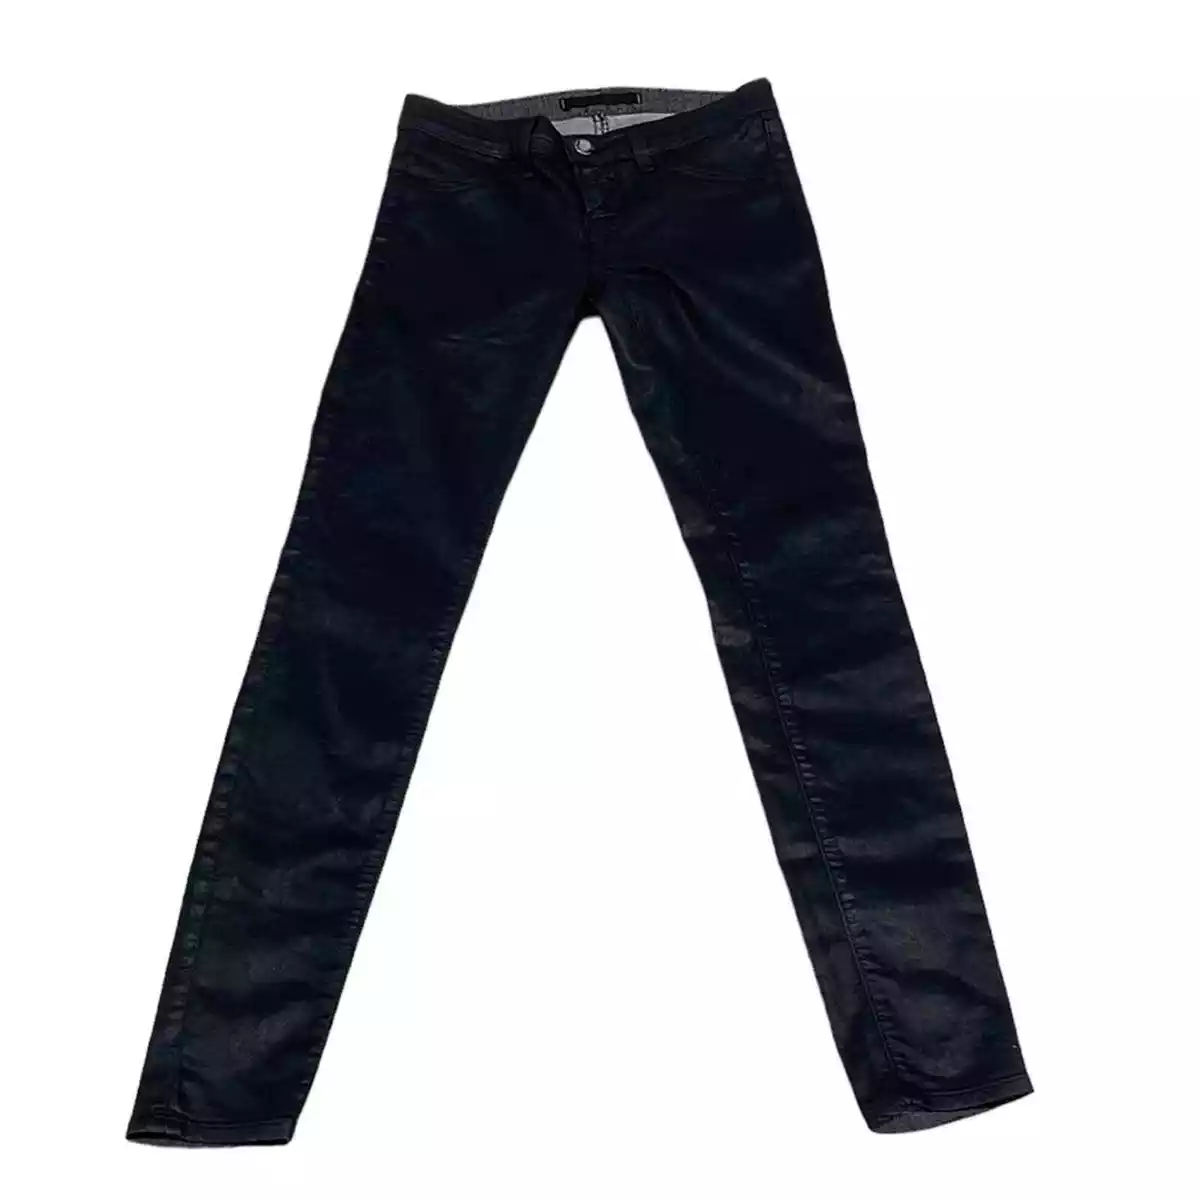 J Brand Jeans Women's 2 Black Jeggings Leggings Sheen Skinny Leg | eBay